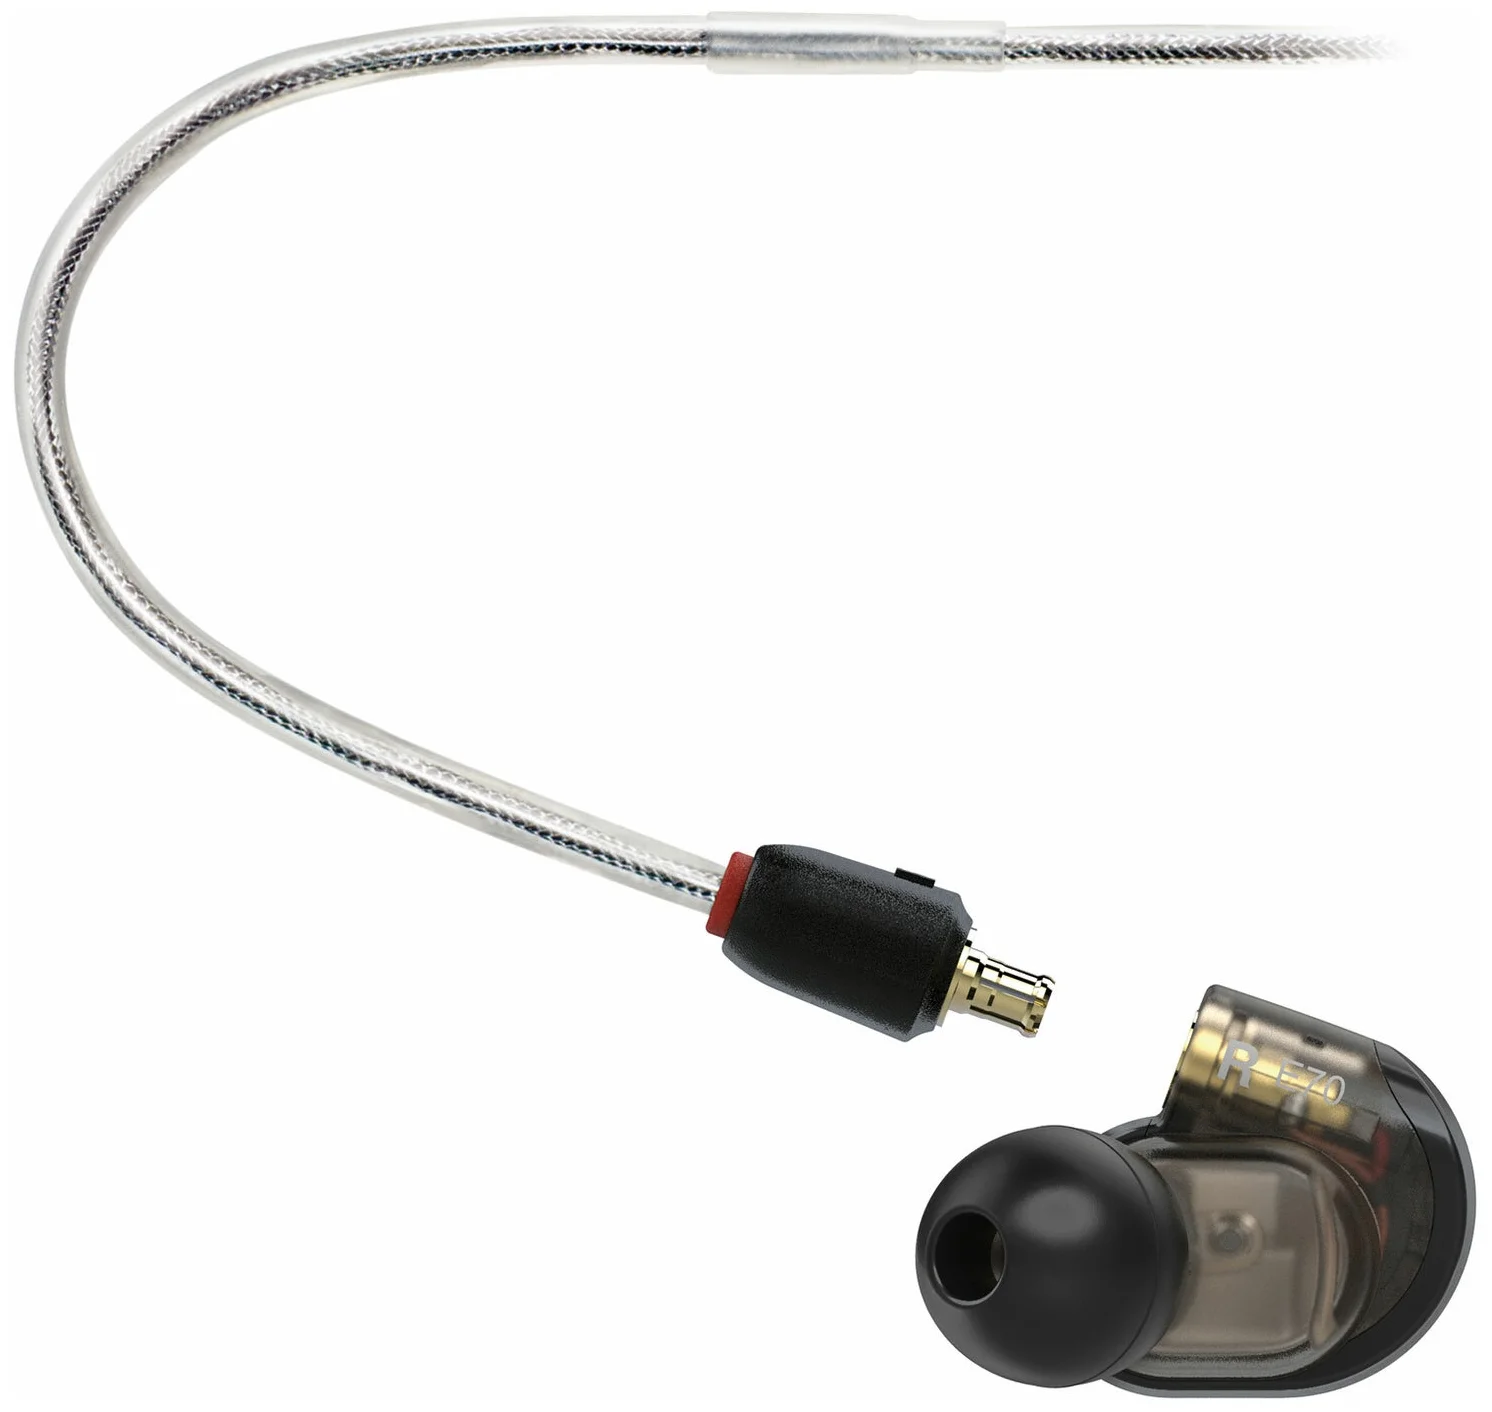 Audio-Technica ATH-E70 - тип излучателей: арматурные